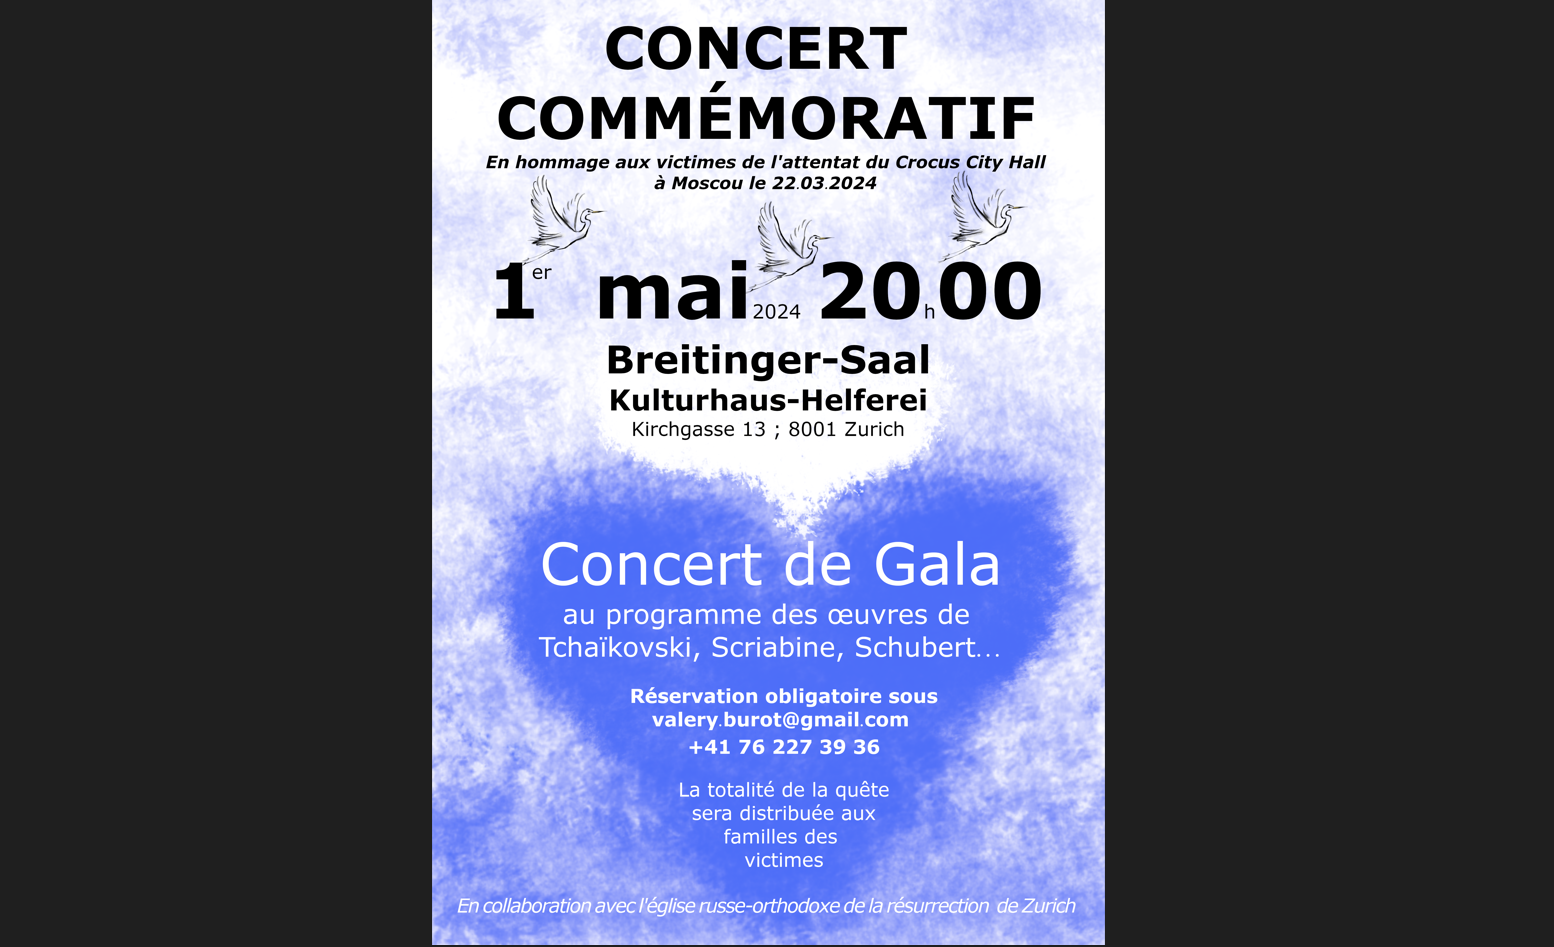 Zurich, 1er mai, 20 heures : le concert en souvenir des victimes du Crocus City Hall